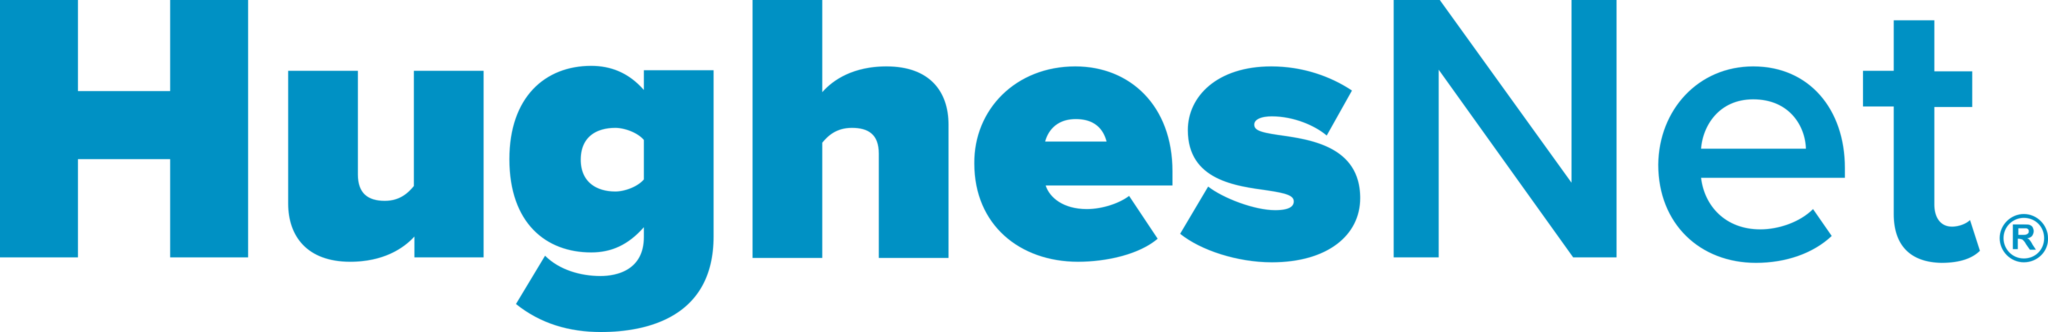 Logo HughsNet - O maior provedor de internet via satélite do mundo